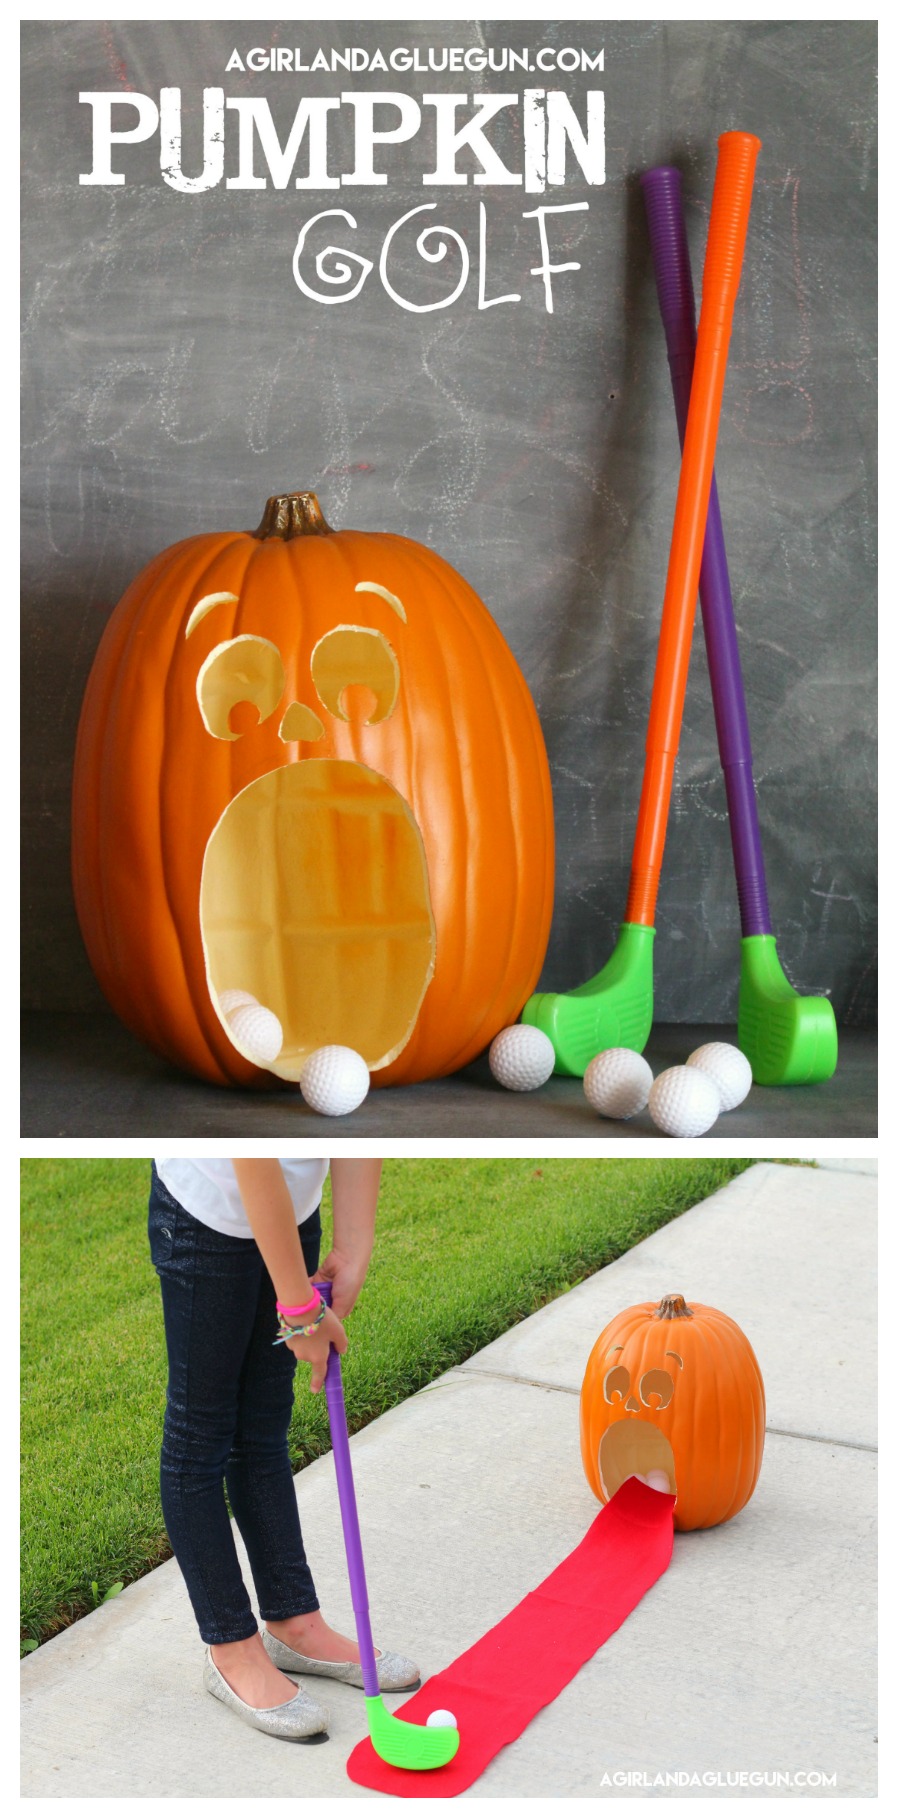 Pumpkin Games. Make your own Pumpkin Golf Game! 